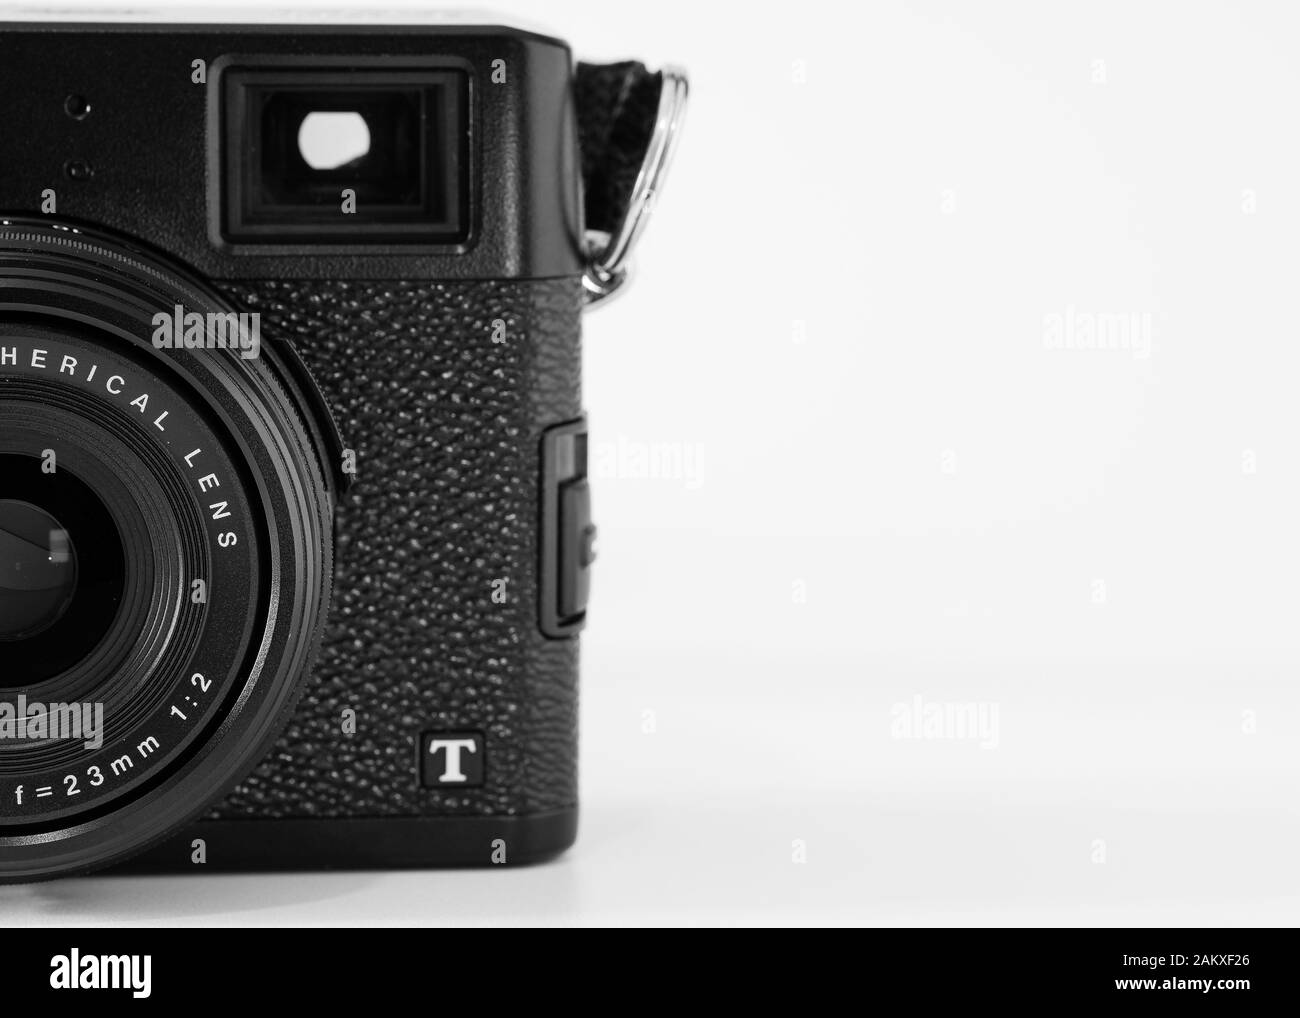 Vue partielle d'un appareil photo numérique compact, marque Fujifilm, modèle X100 T, viseur optique visible, image monochrome. Banque D'Images